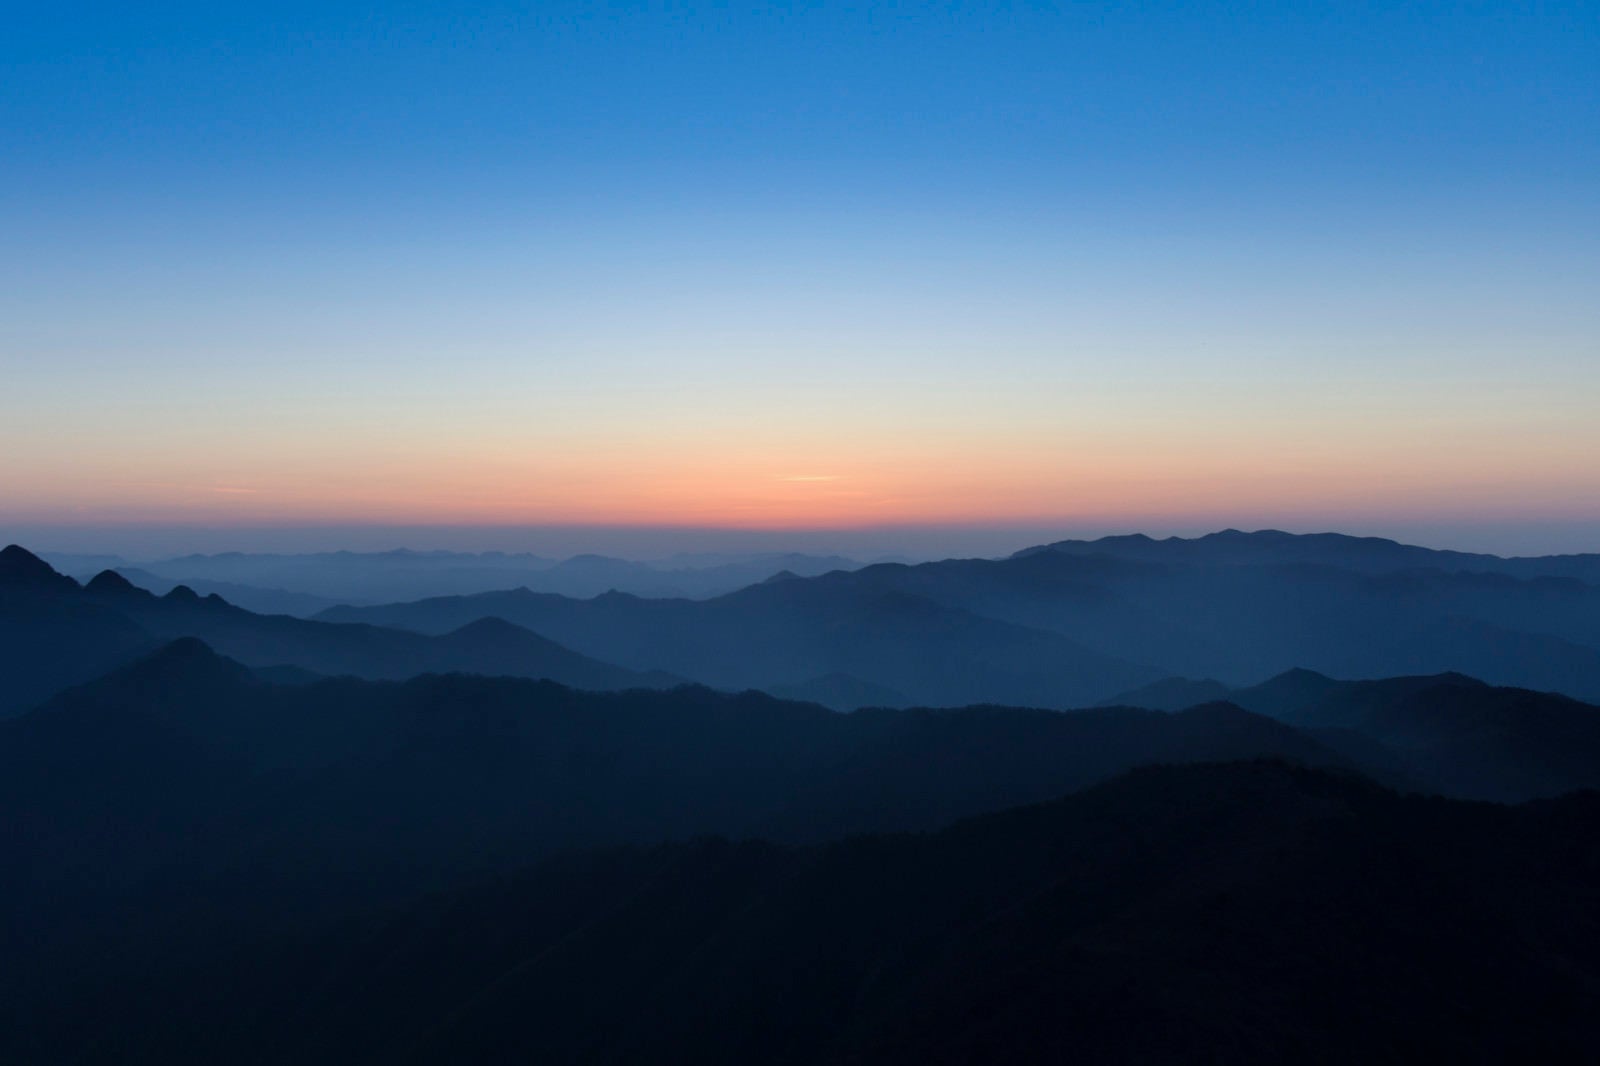 「大台ヶ原の朝焼けと近畿の山々」の写真